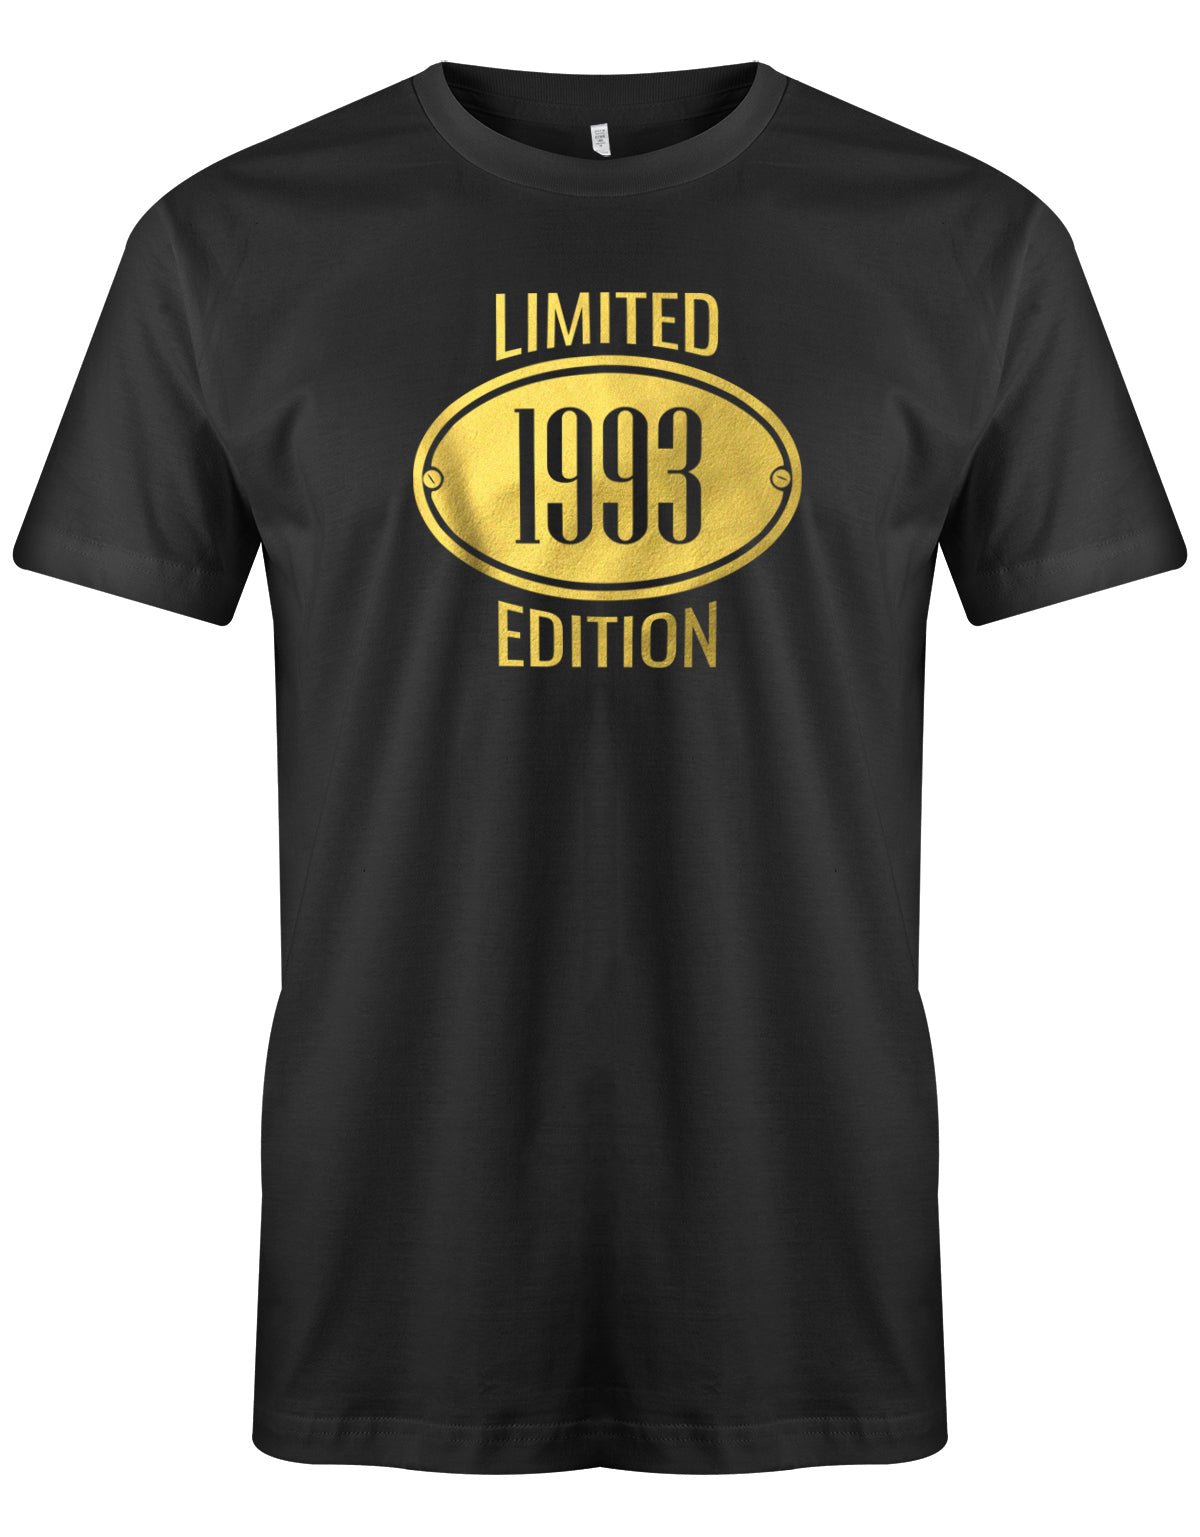 Limited Edition 1993 Gold - Jahrgang 1993 Geschenk Männer Shirt